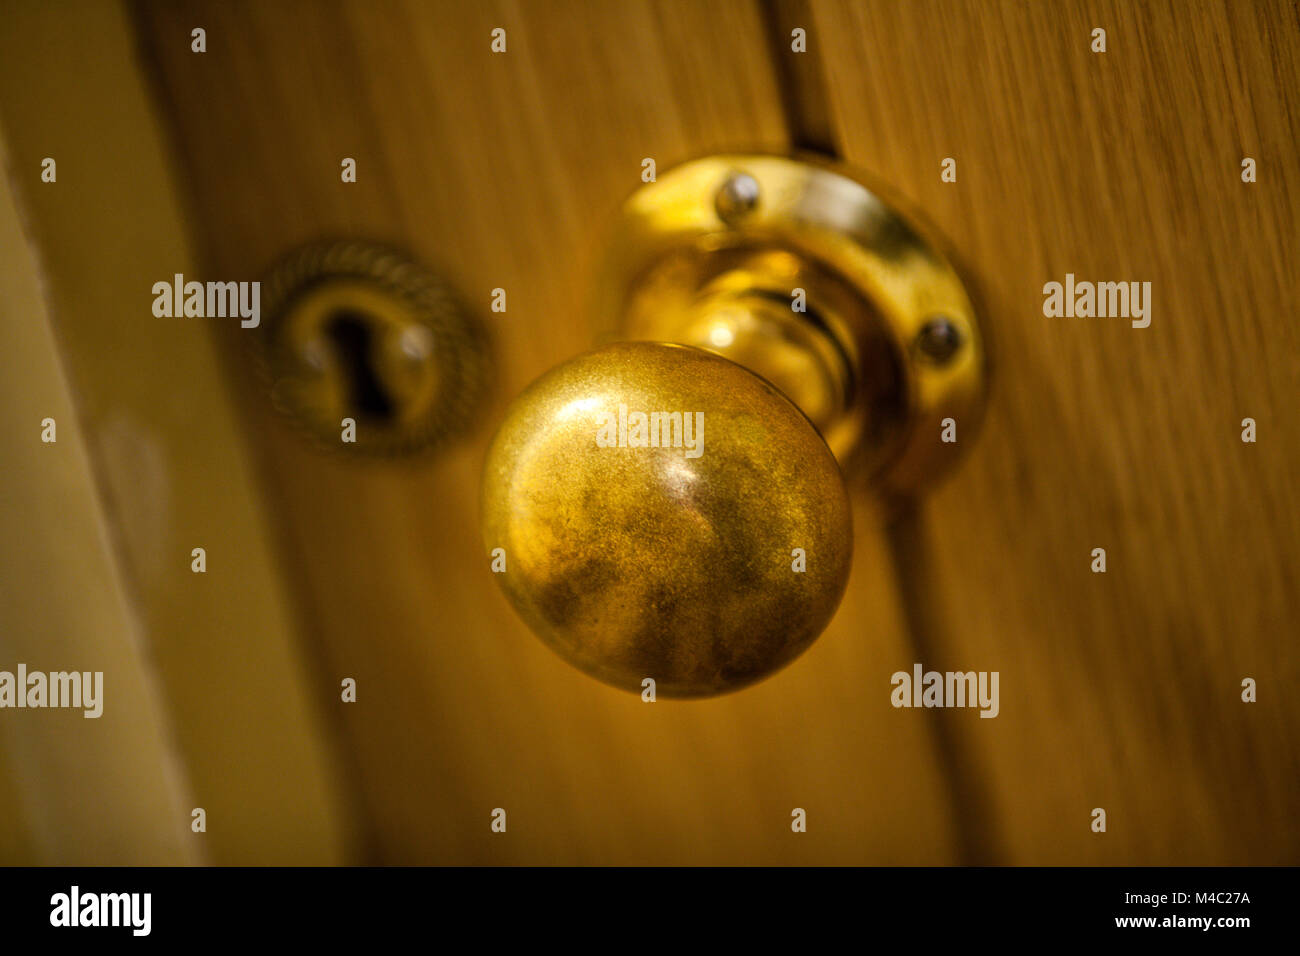 Golden door knob Stock Photo